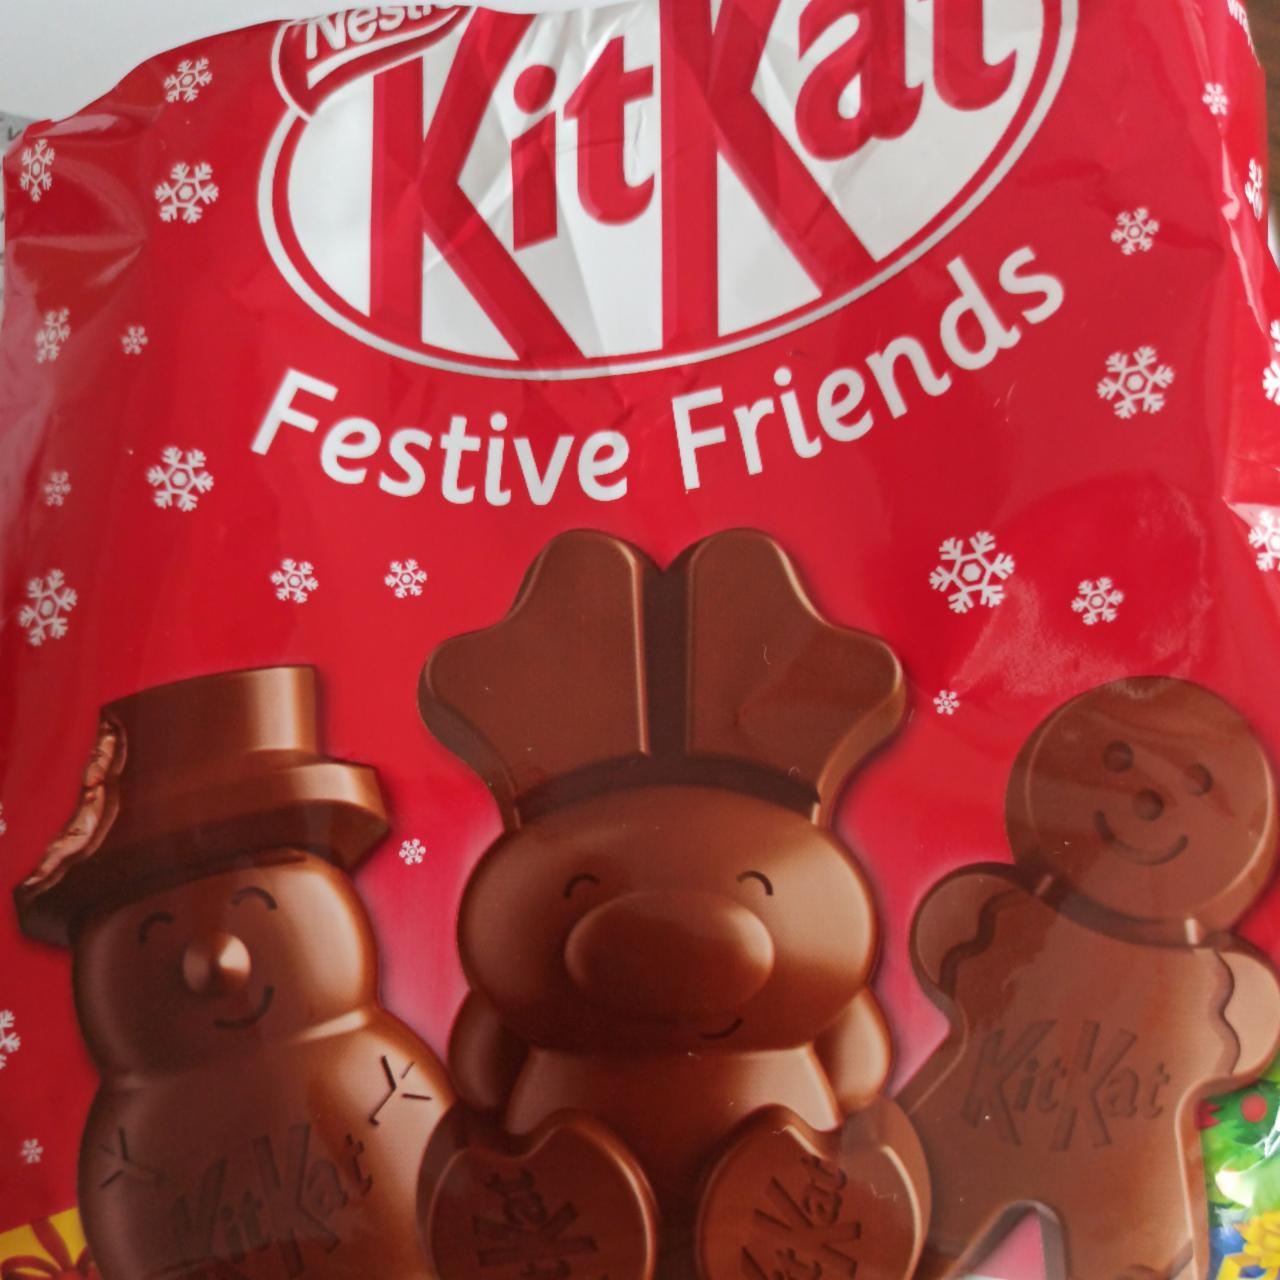 Képek - KitKat Festive Friends gluténmentes tejcsokoládé kakaós krémmel, kekszporral, rizspehellyel 65 g